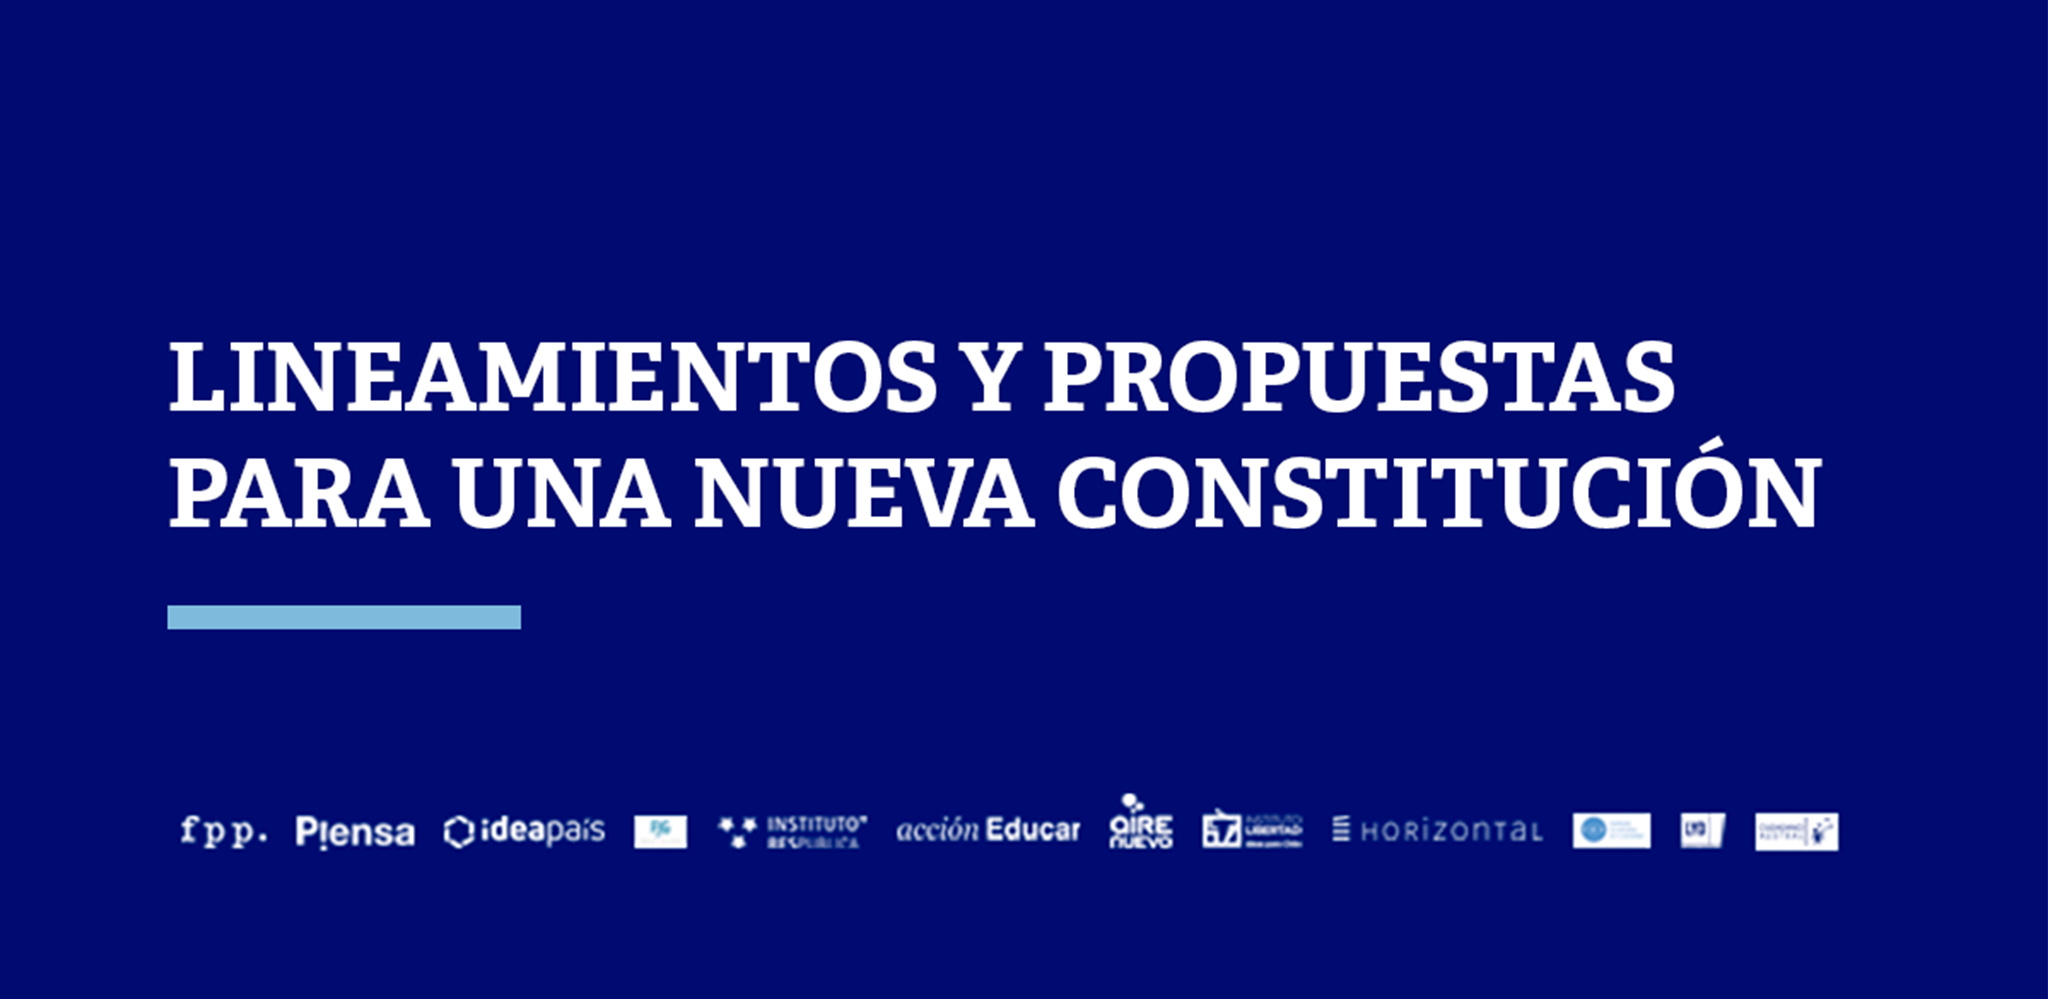 FPP junto a 11 centros de estudio dan a conocer propuestas para nueva Constitución